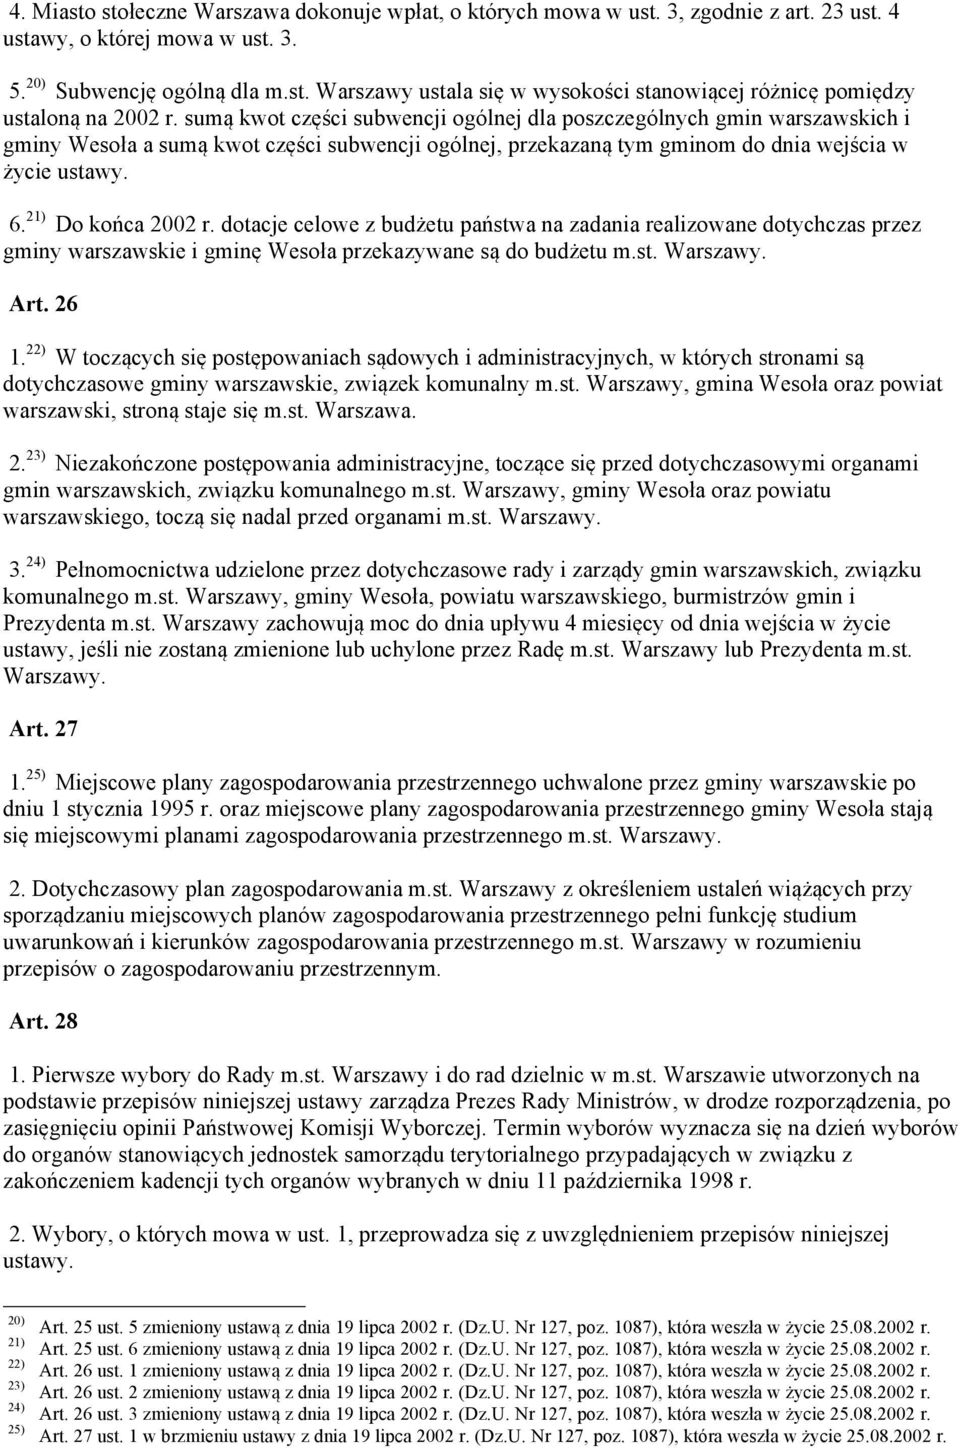 21) Do końca 2002 r. dotacje celowe z budżetu państwa na zadania realizowane dotychczas przez gminy warszawskie i gminę Wesoła przekazywane są do budżetu m.st. Warszawy. Art. 26 1.